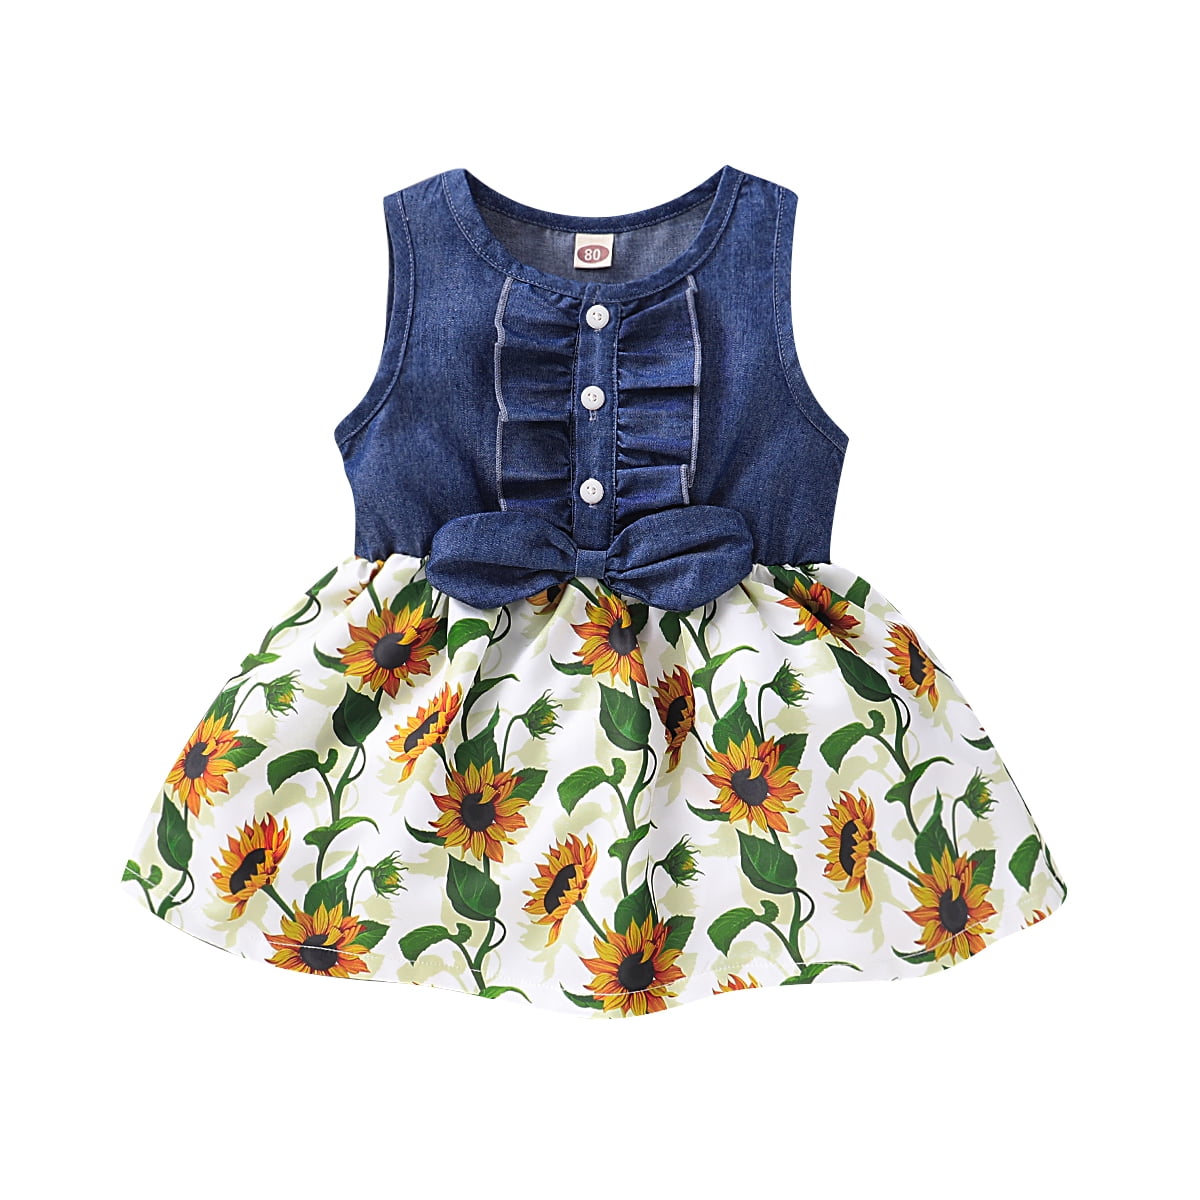 Toddler Girl Sunflower Dress Sleeveless Denim Top Sunflower Print Tutu Dress Princess Summer Outfits 